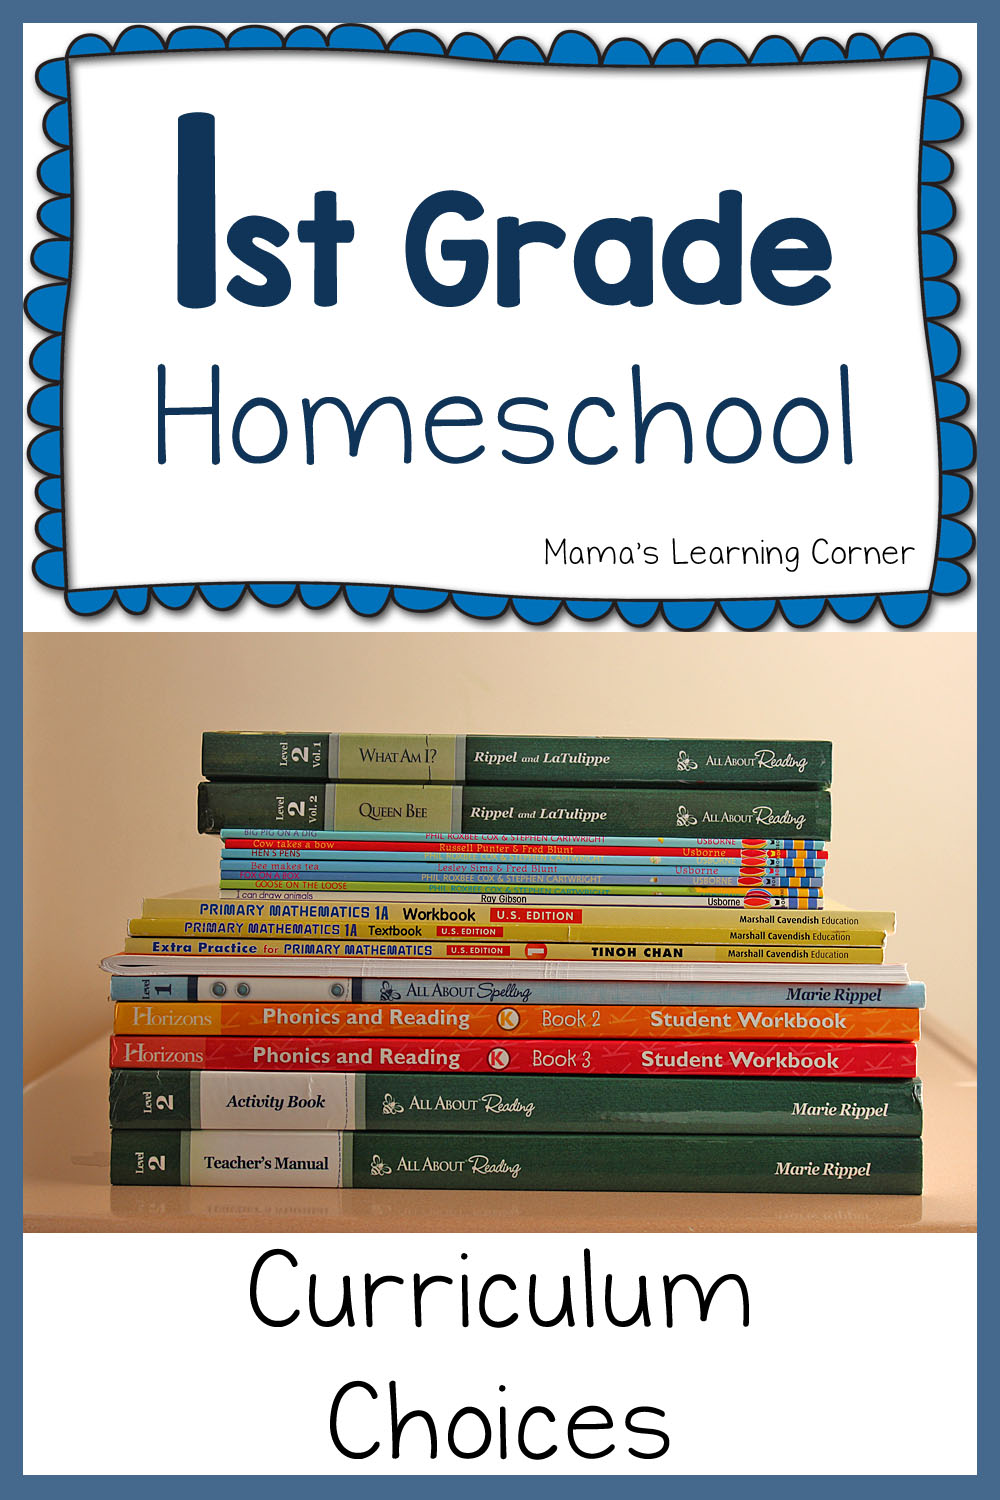 1st Grade Curriculum Plans 2015 2016 - Kindergarten Curriculum Homeschool